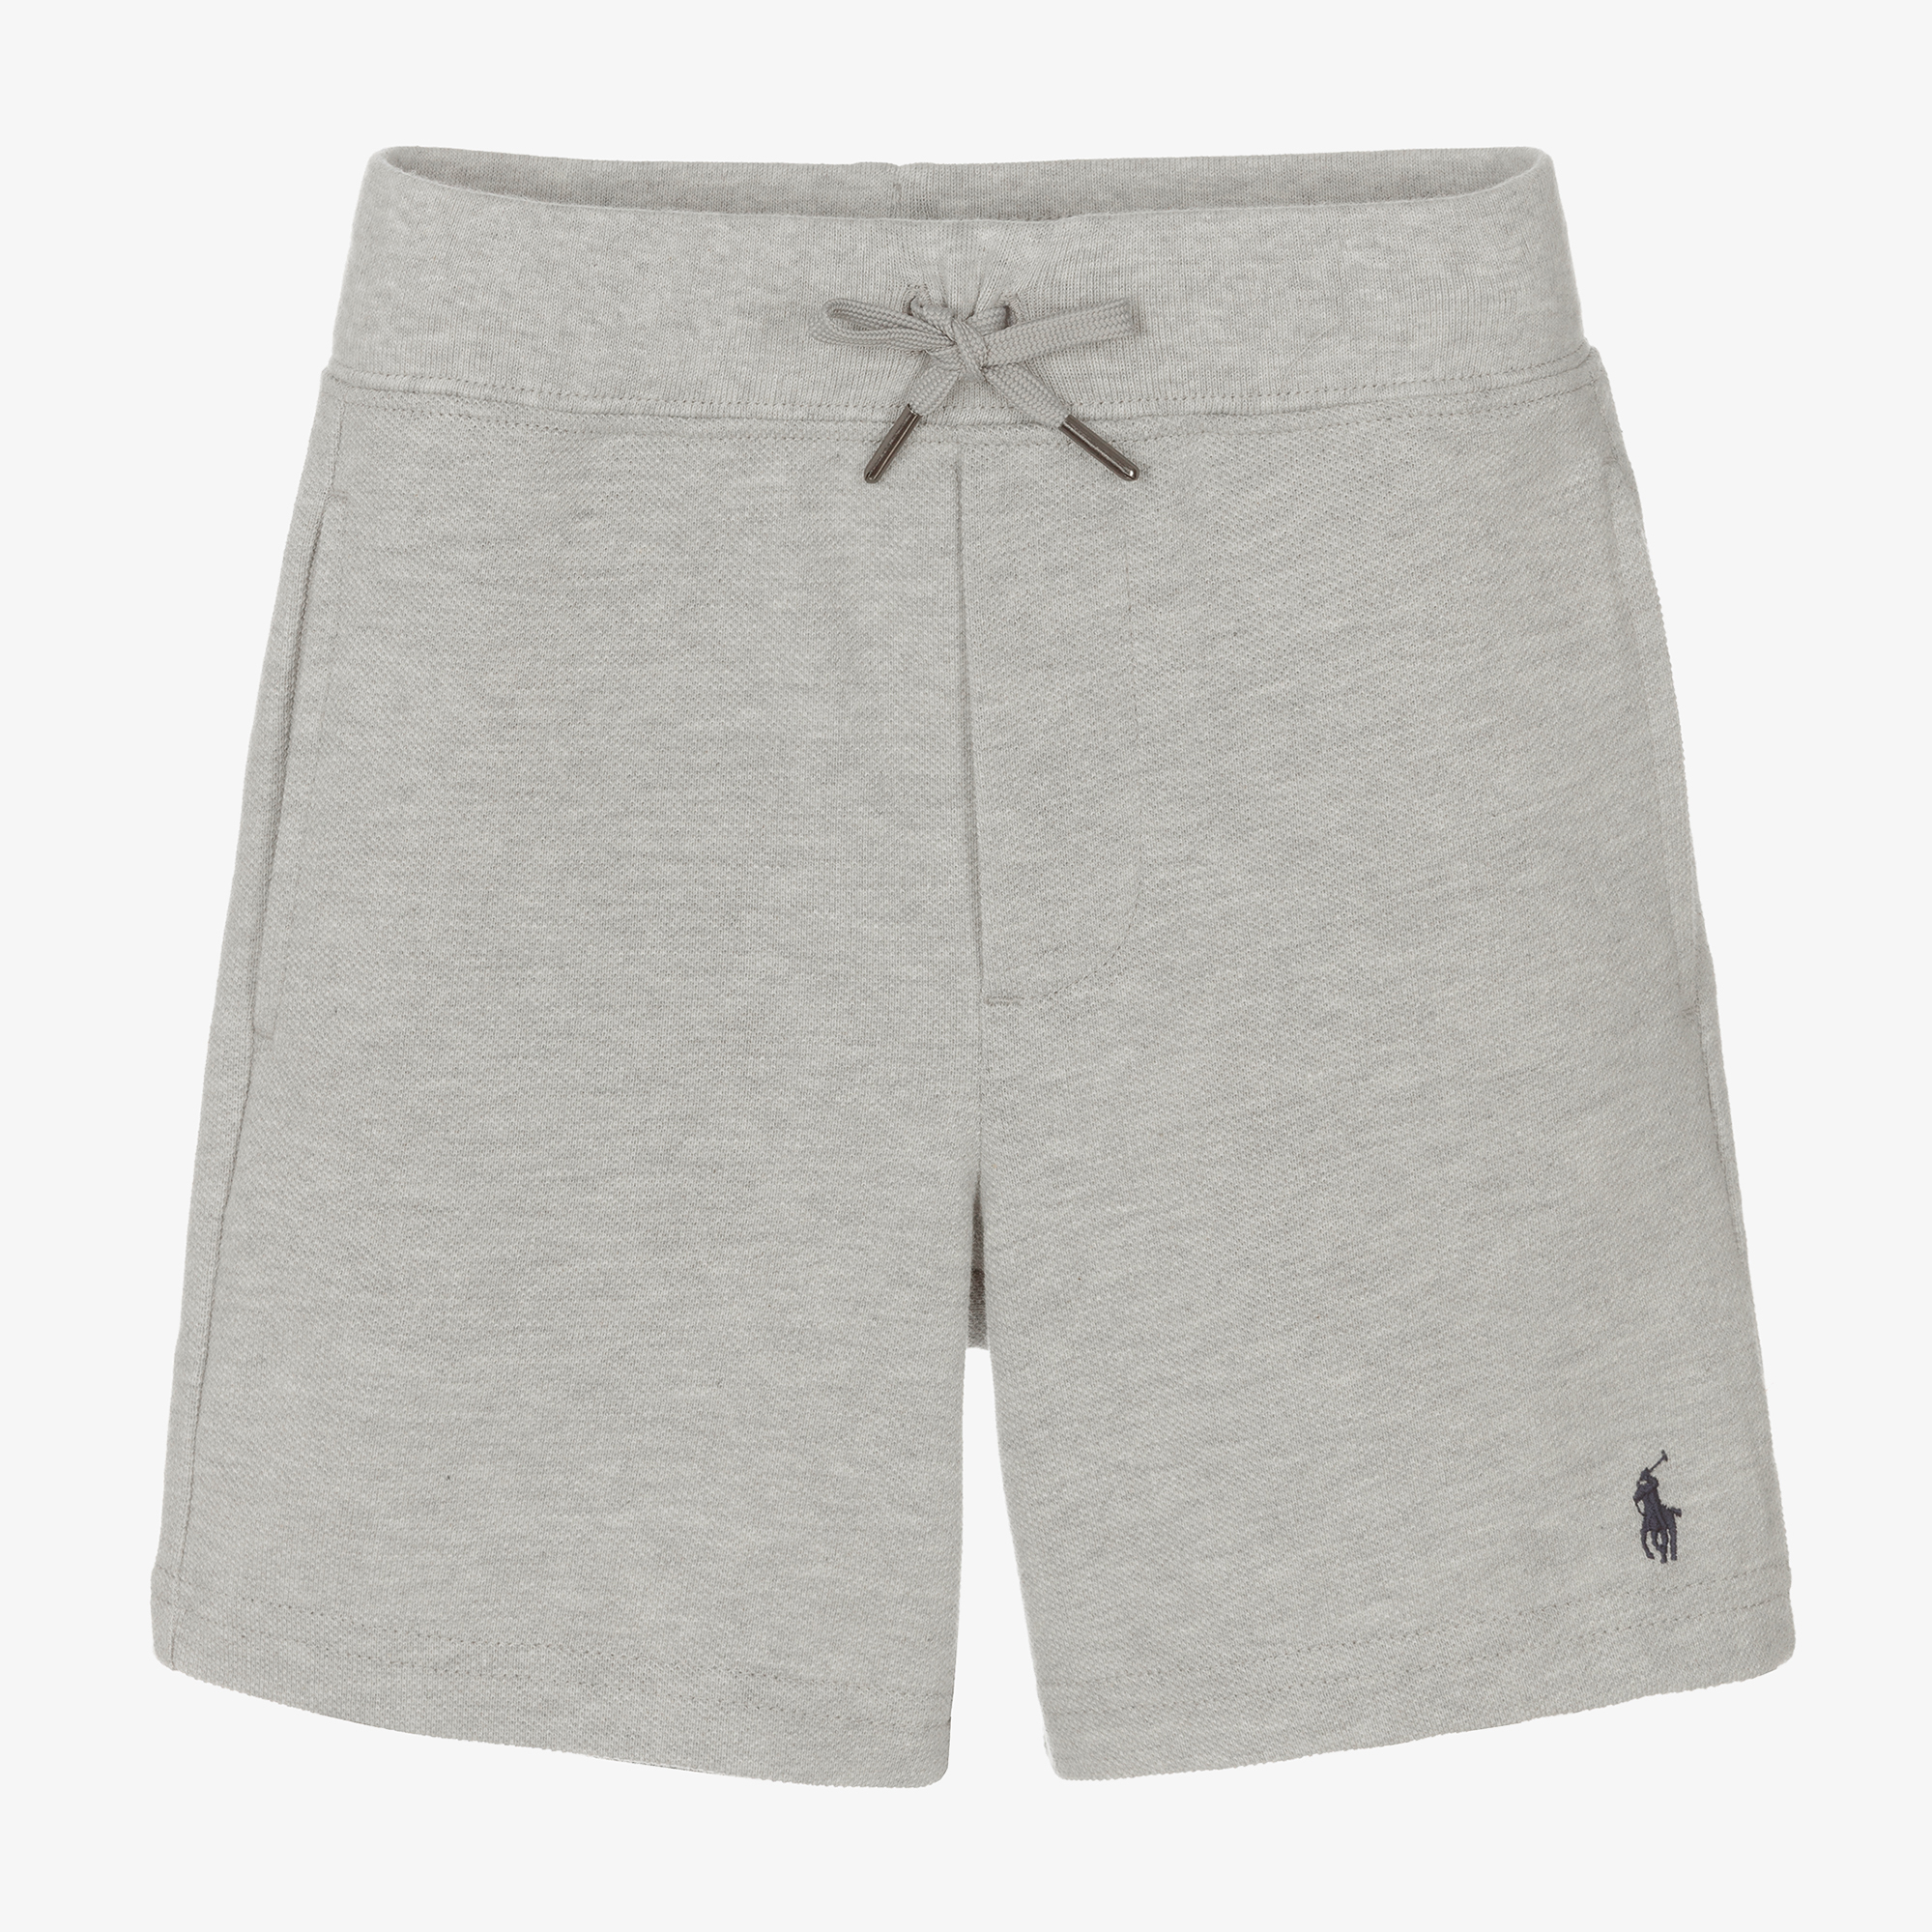 Polo Ralph Lauren - Boys Grey Cotton Piqué Shorts